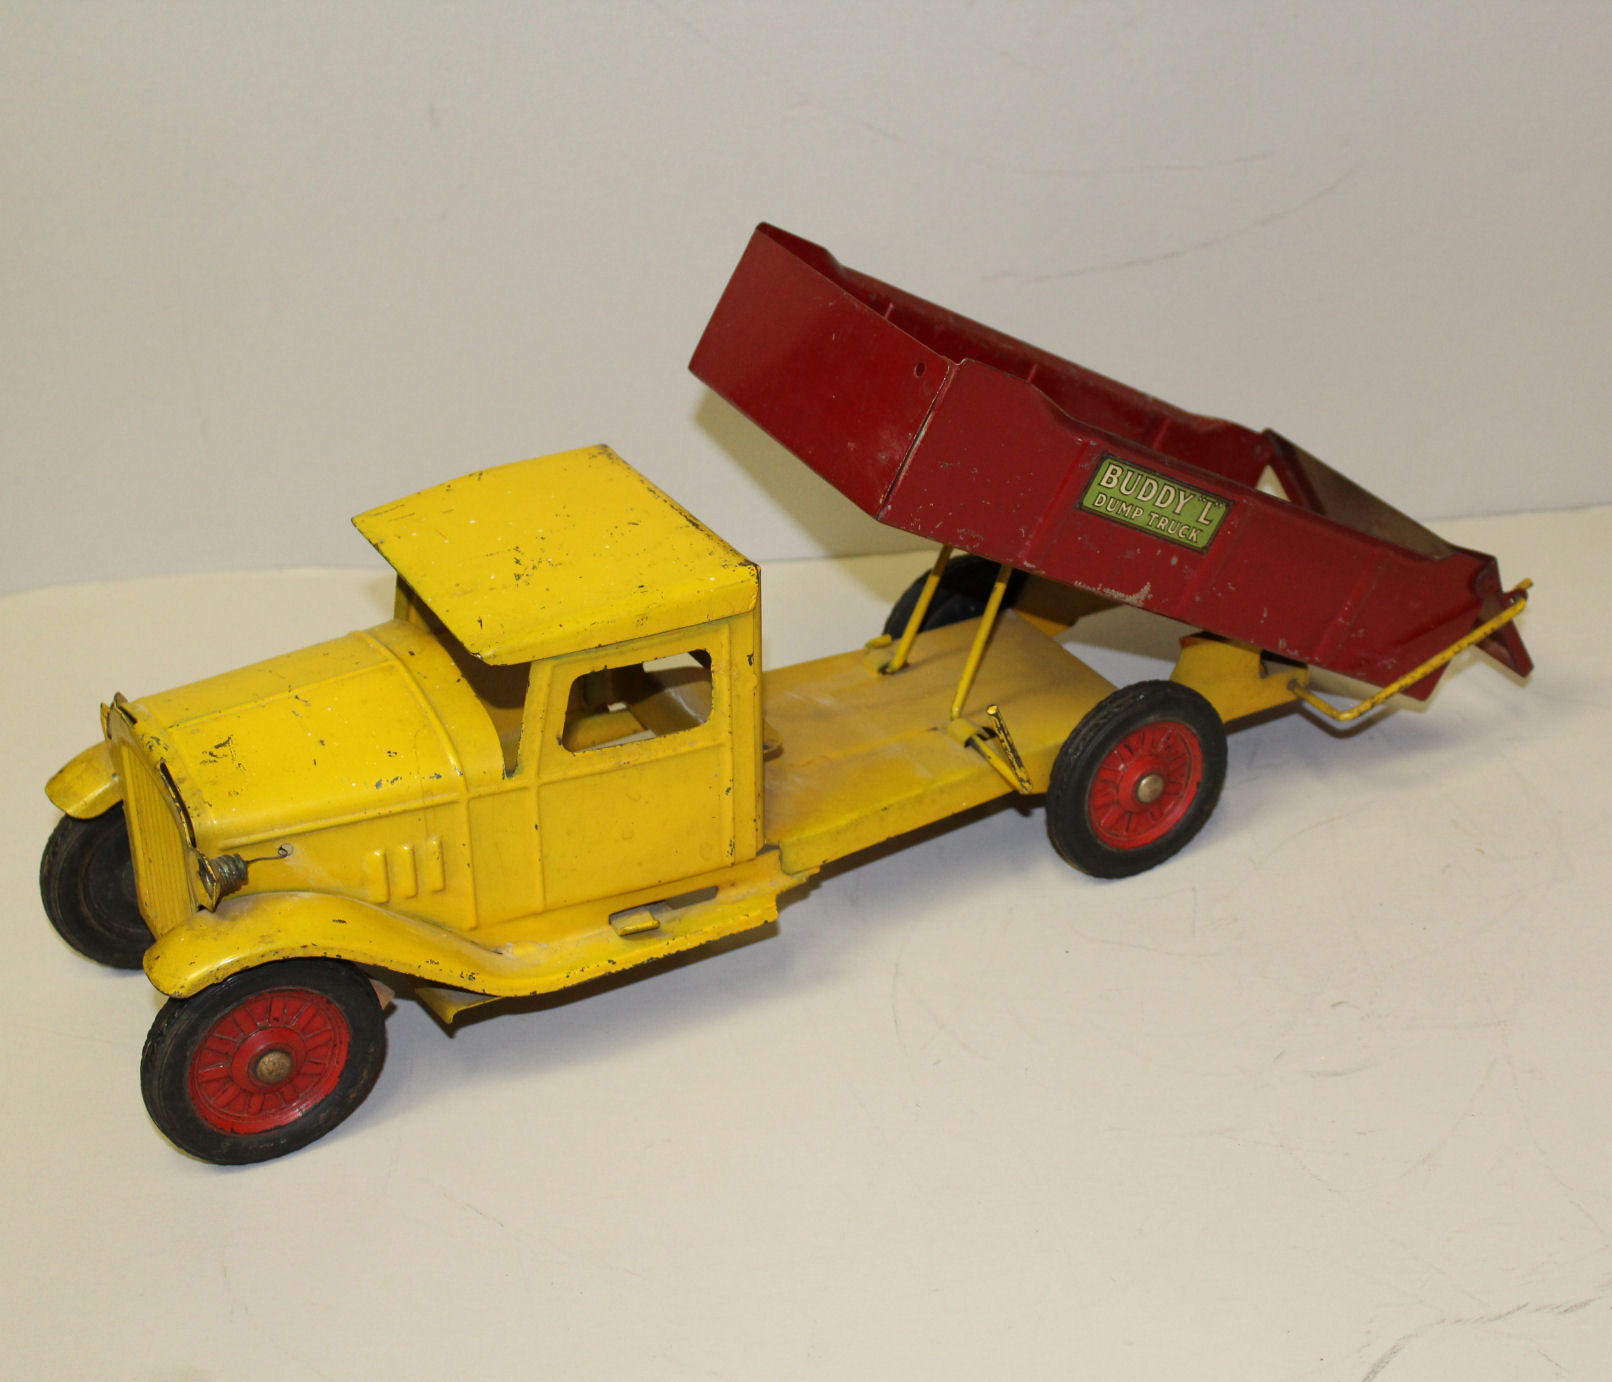 Bargain John's Antiques | 1930's Antique Pressed Steel Toy Dump Truck - Buddy  L - Bargain John's Antiques